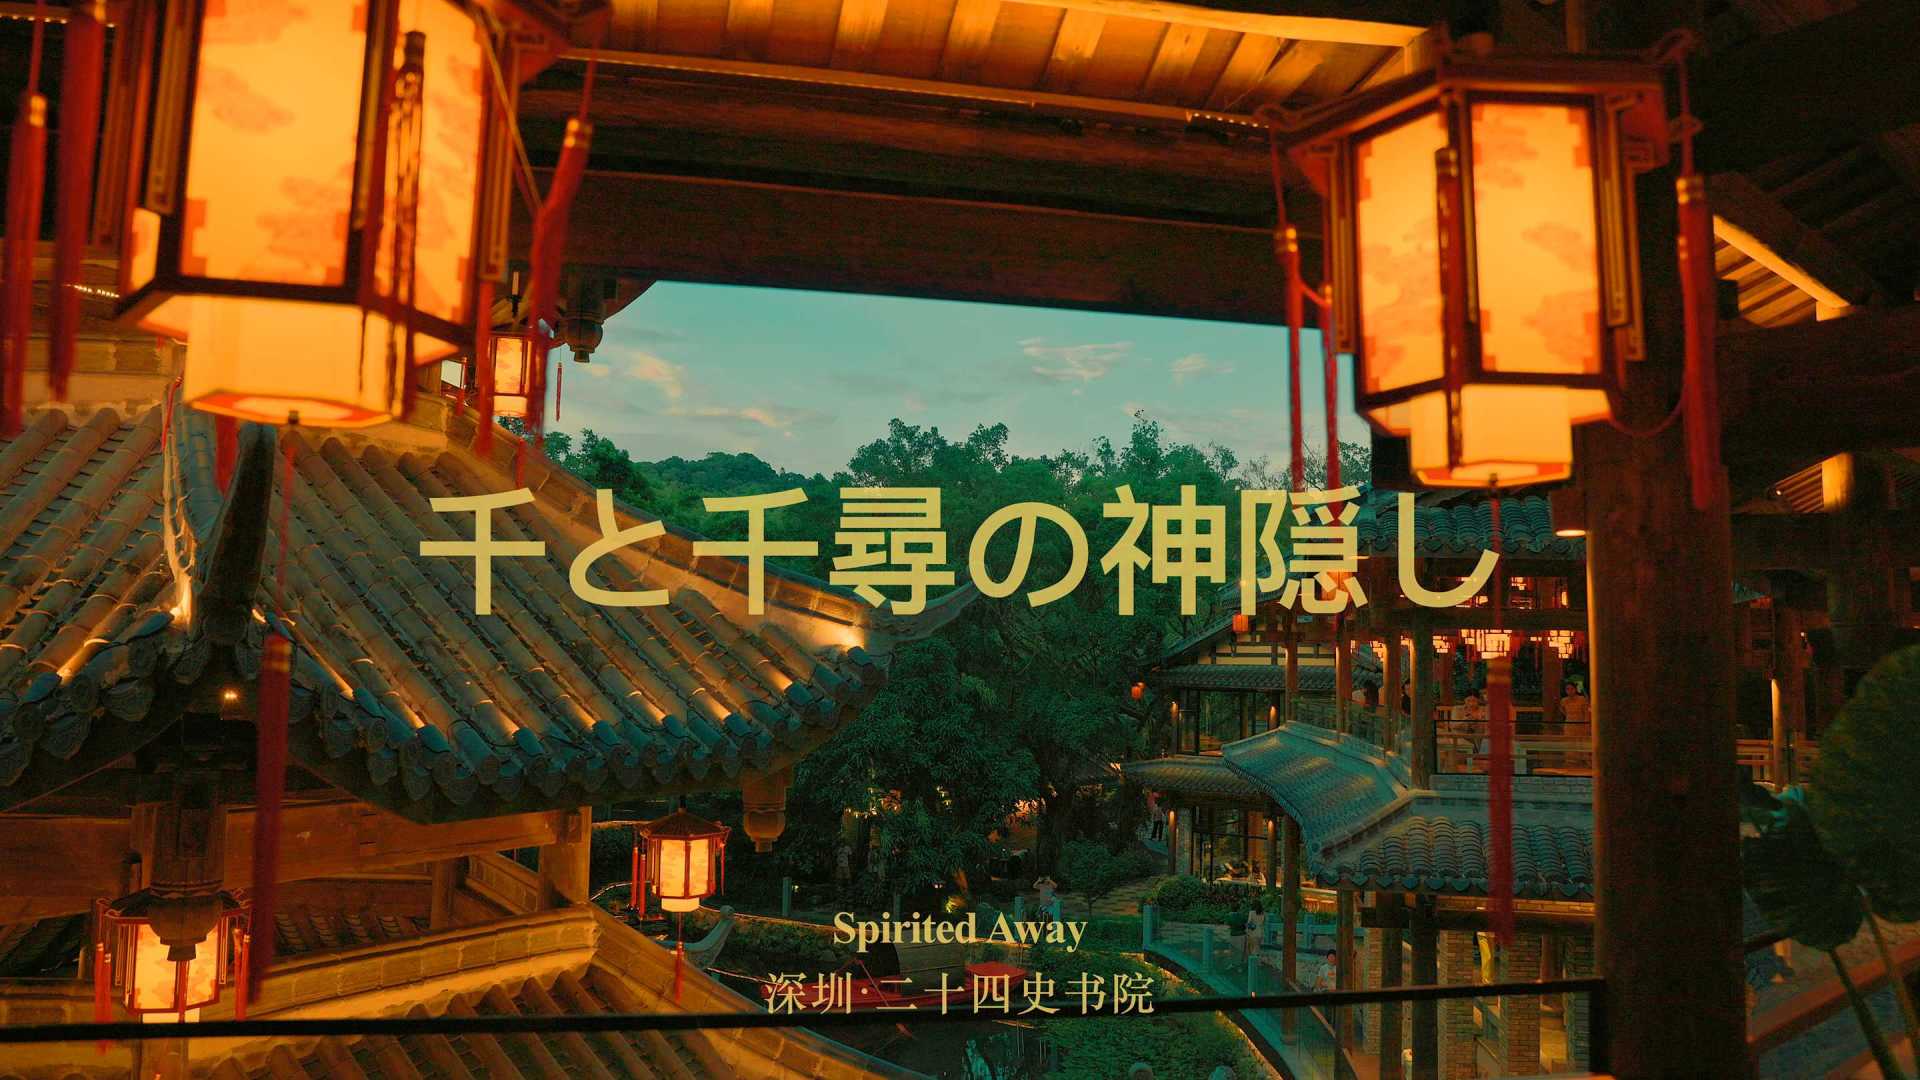 现实版千与千寻 / 深圳二十四史书院的傍晚 Cinemtic Film (4K)